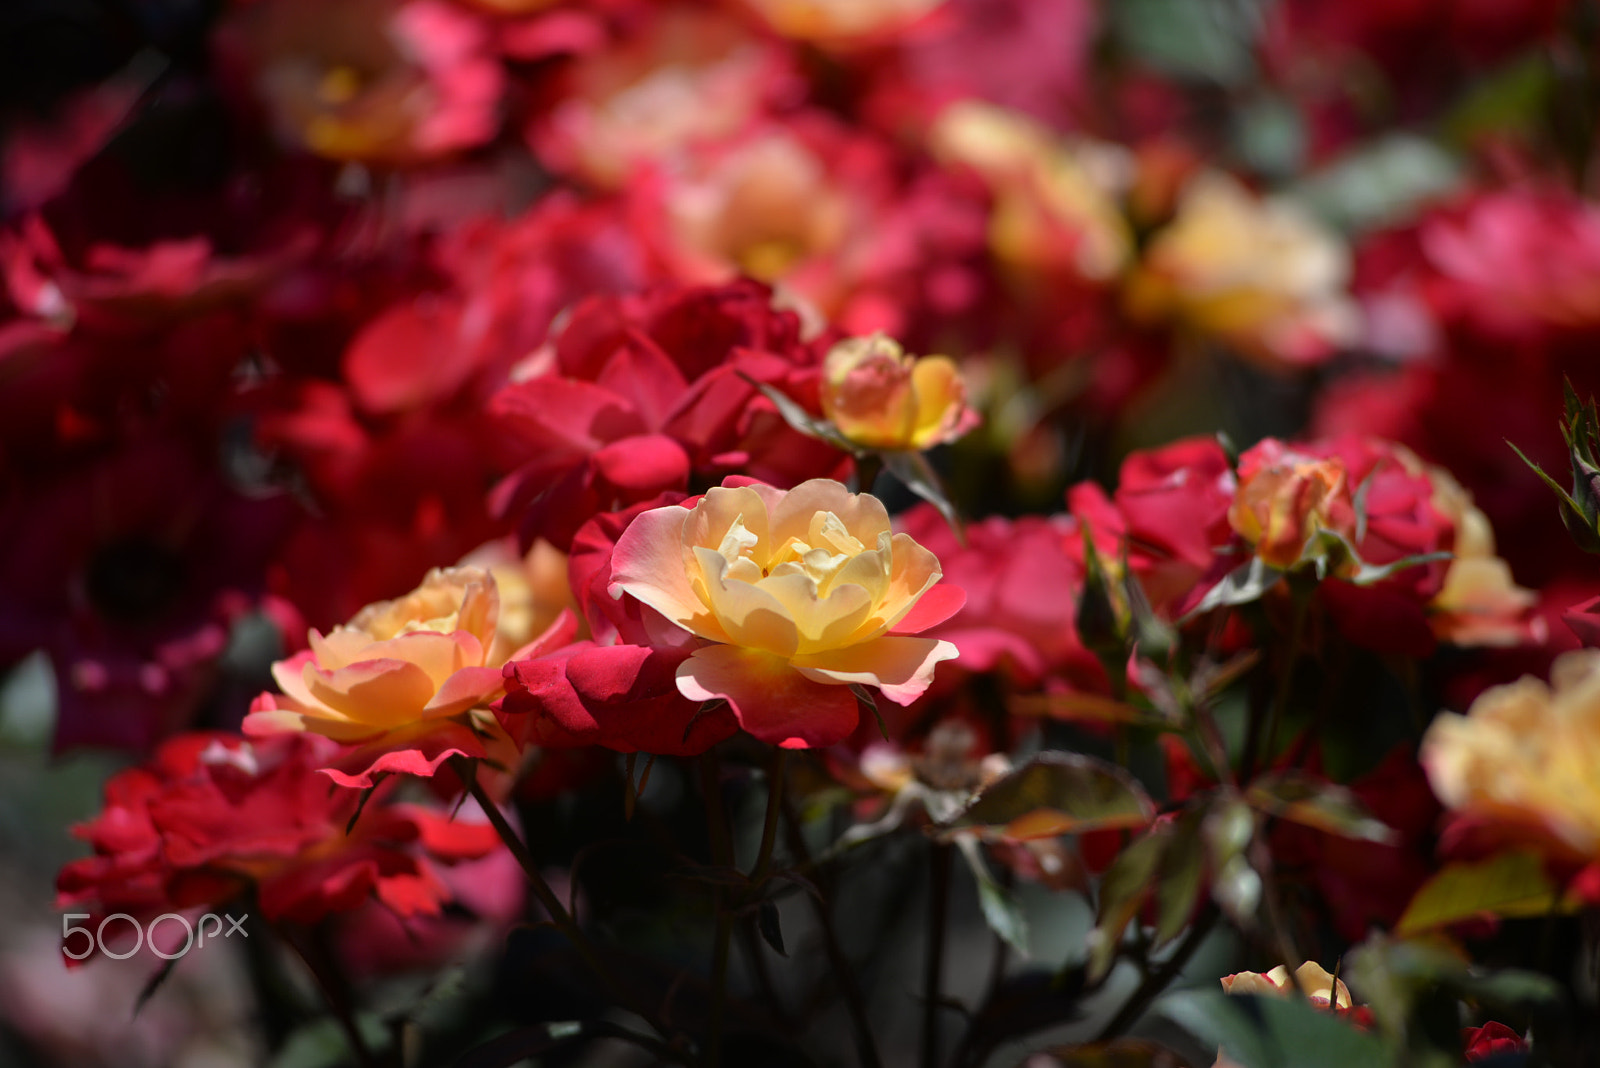 Nikon AF-Nikkor 80-200mm F2.8D ED sample photo. Colorful rose photography